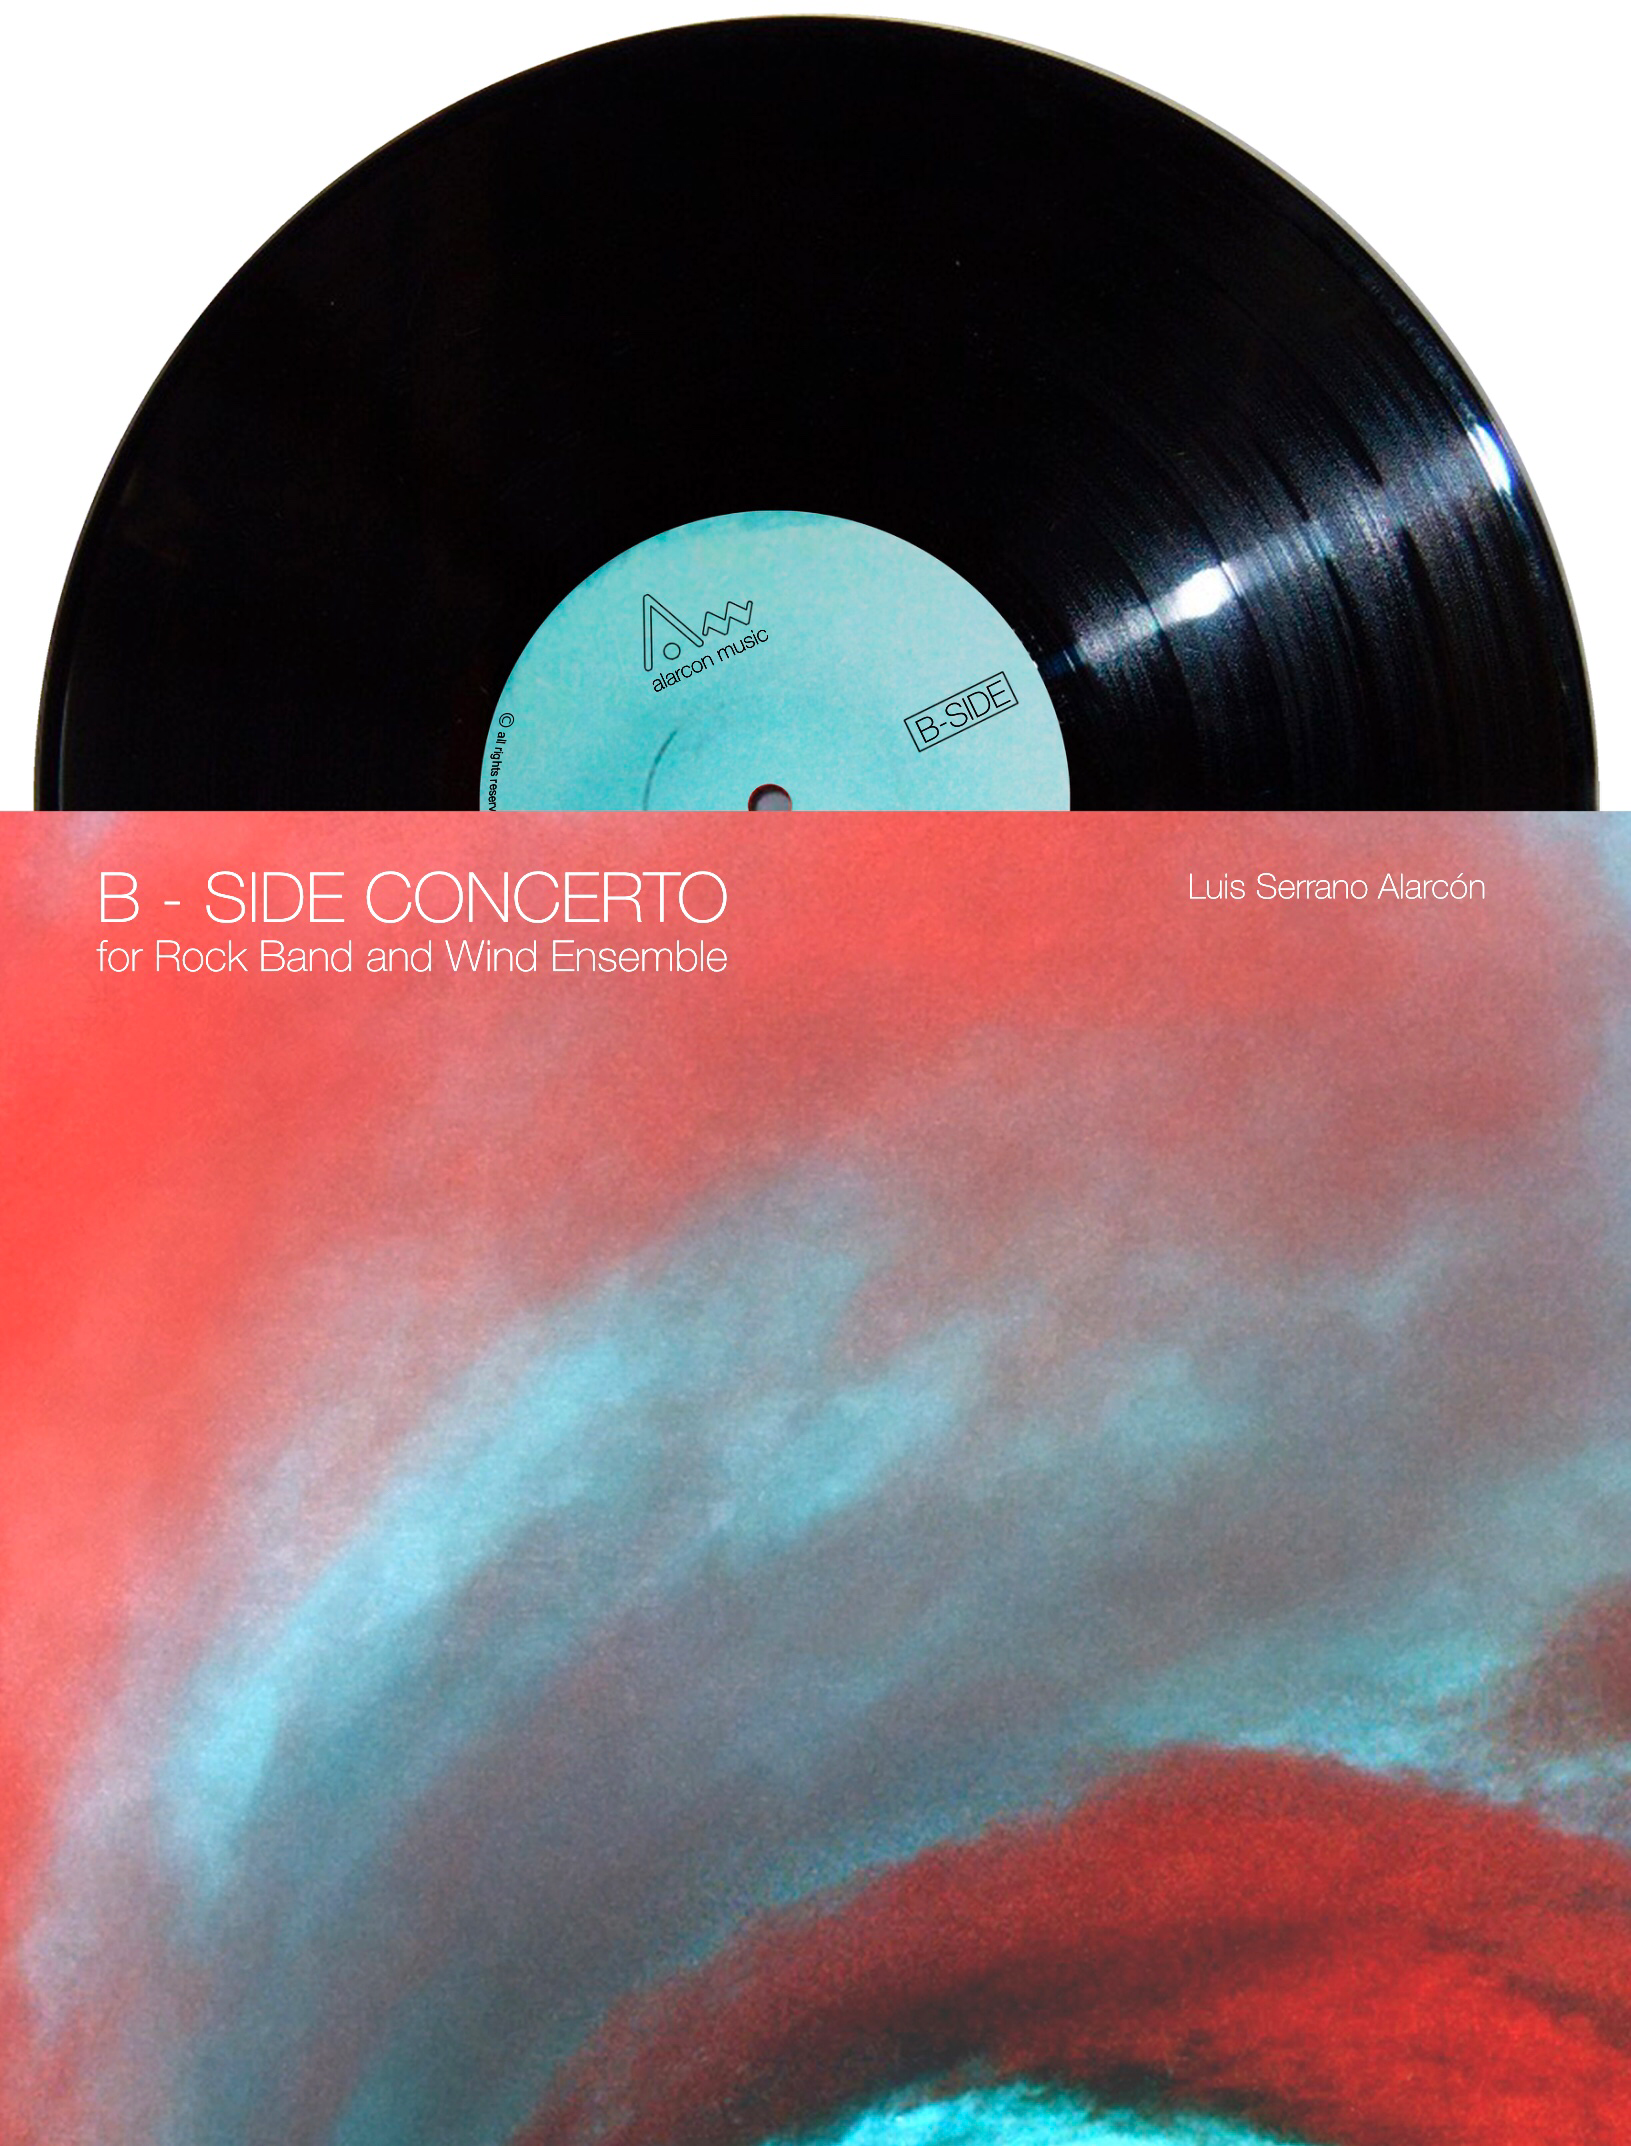 B-Side Concerto by Luis Serrano Alarcon